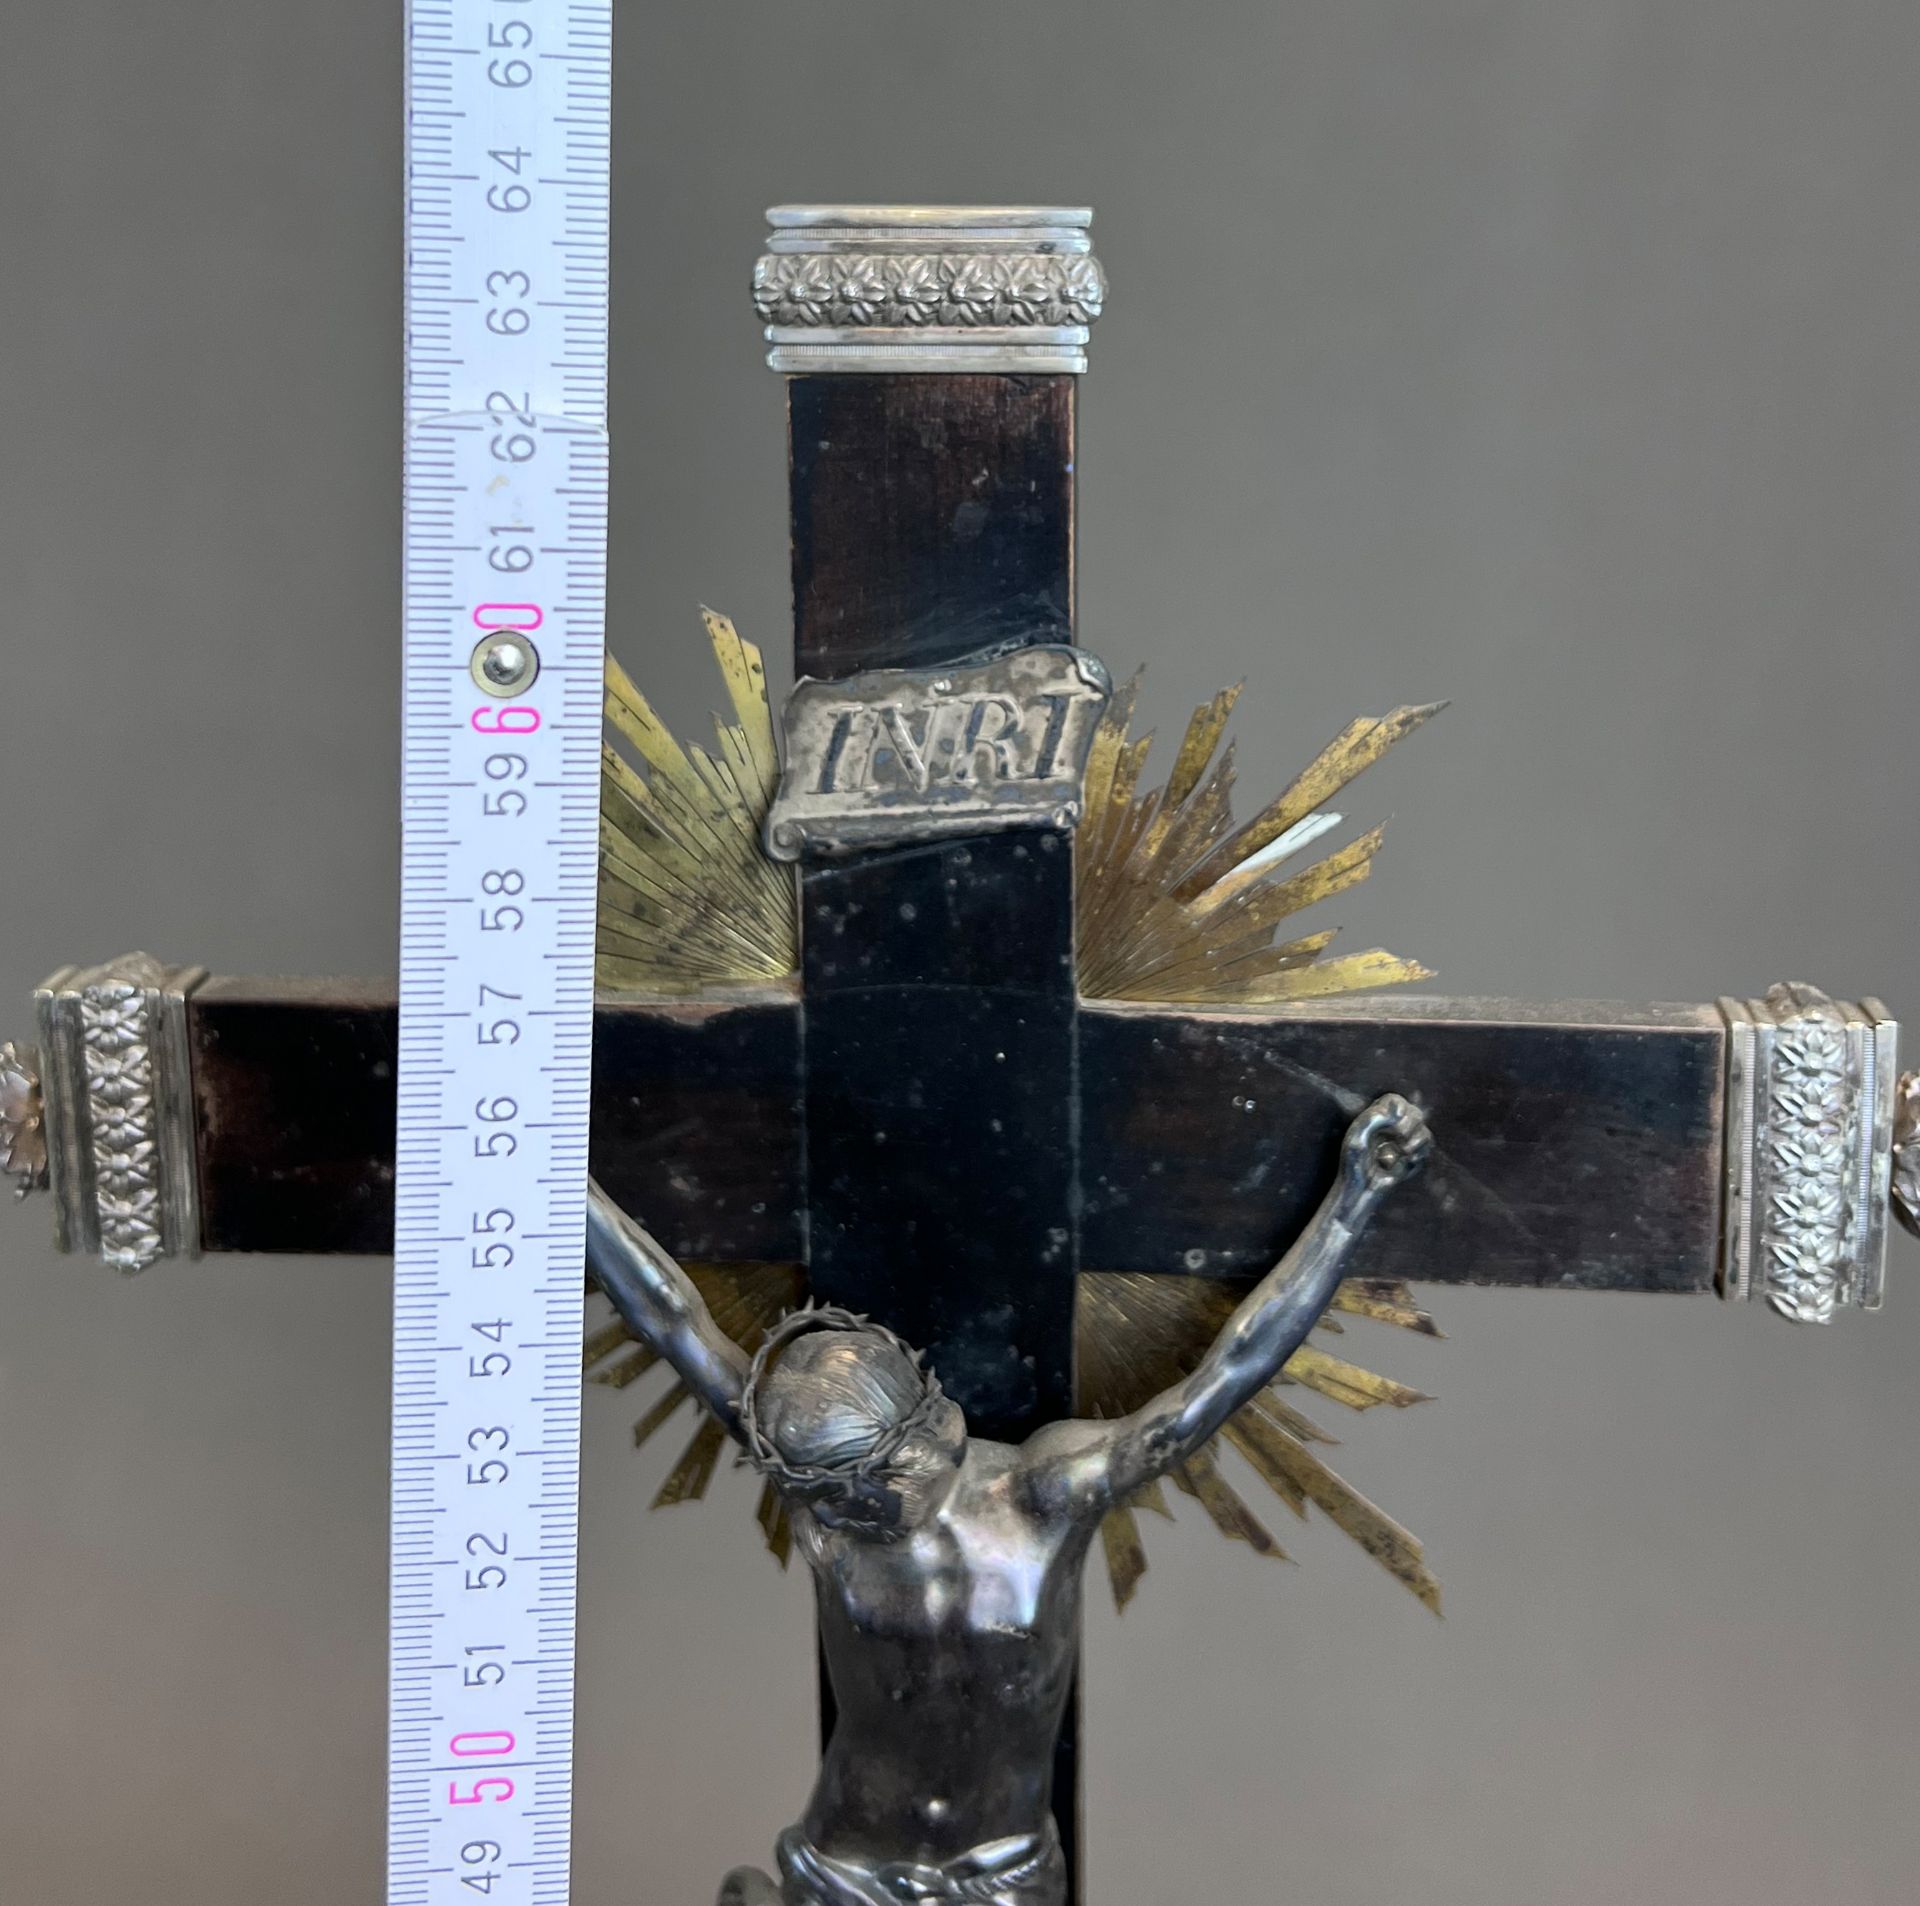 Standkreuz. Altarkreuz mit Metall-Applikationen. 19. Jahrhundert. Deutschland. - Bild 9 aus 9